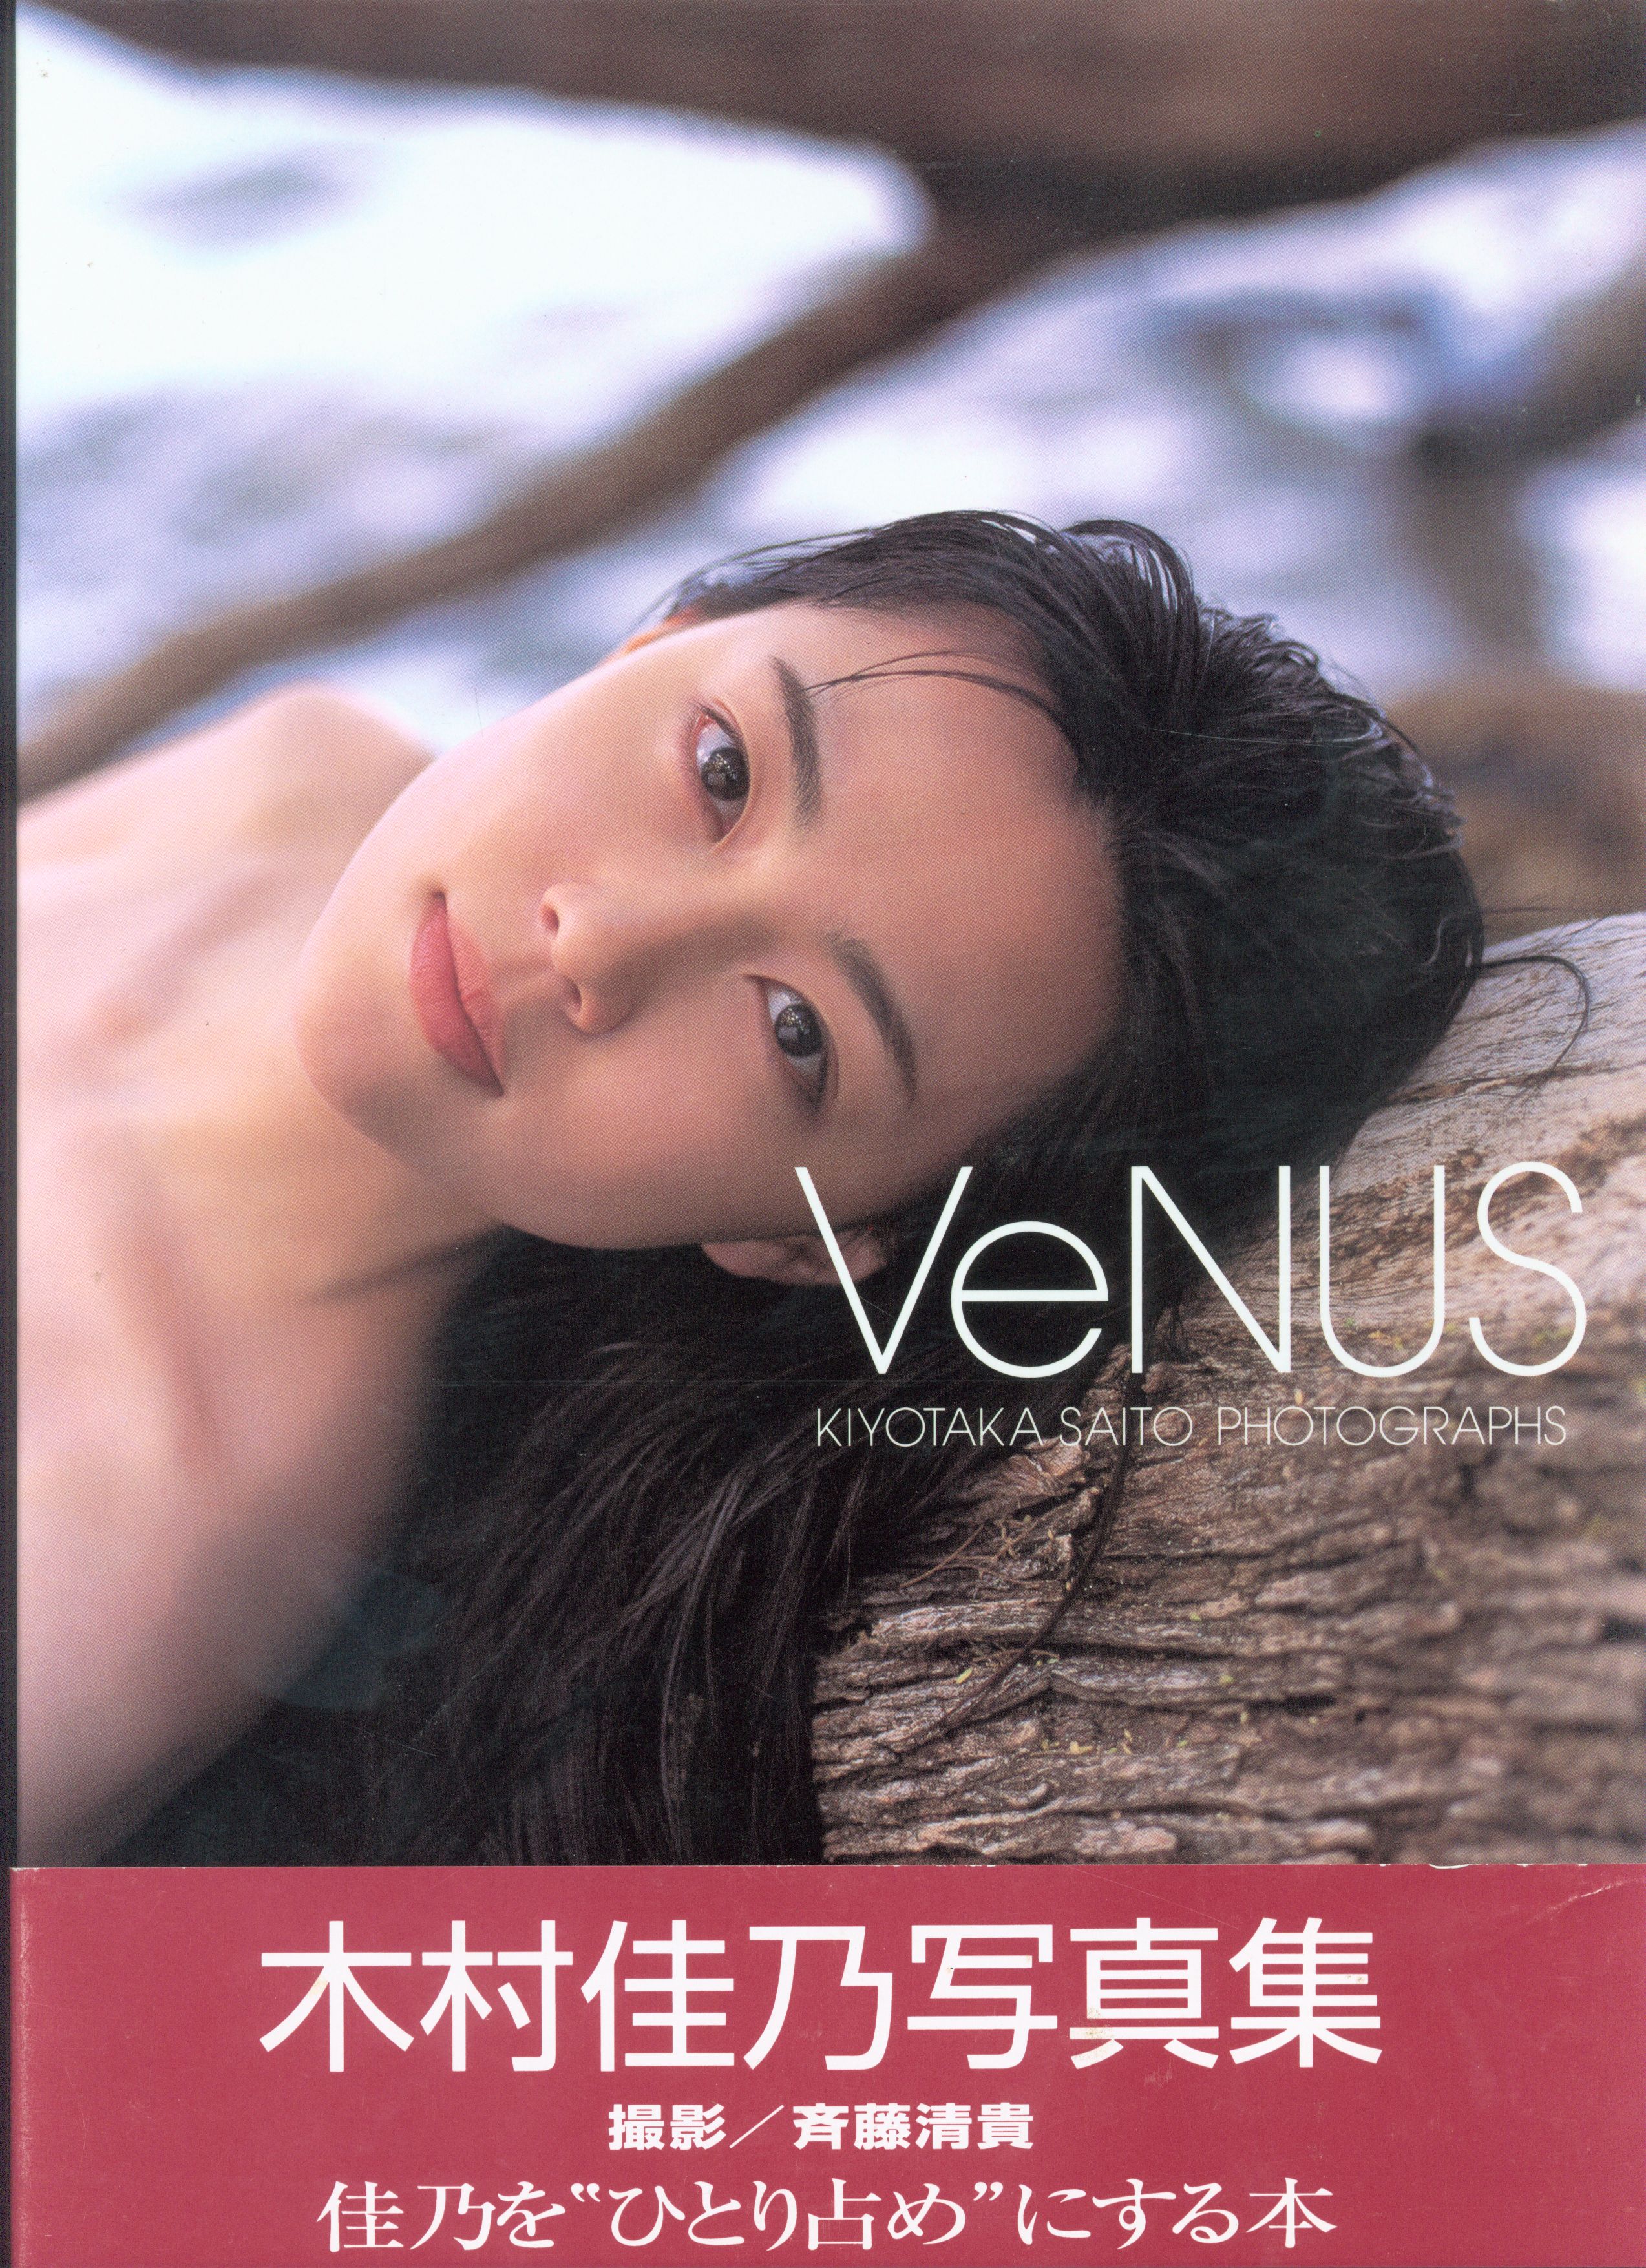 Yoshine Kimure nude photos